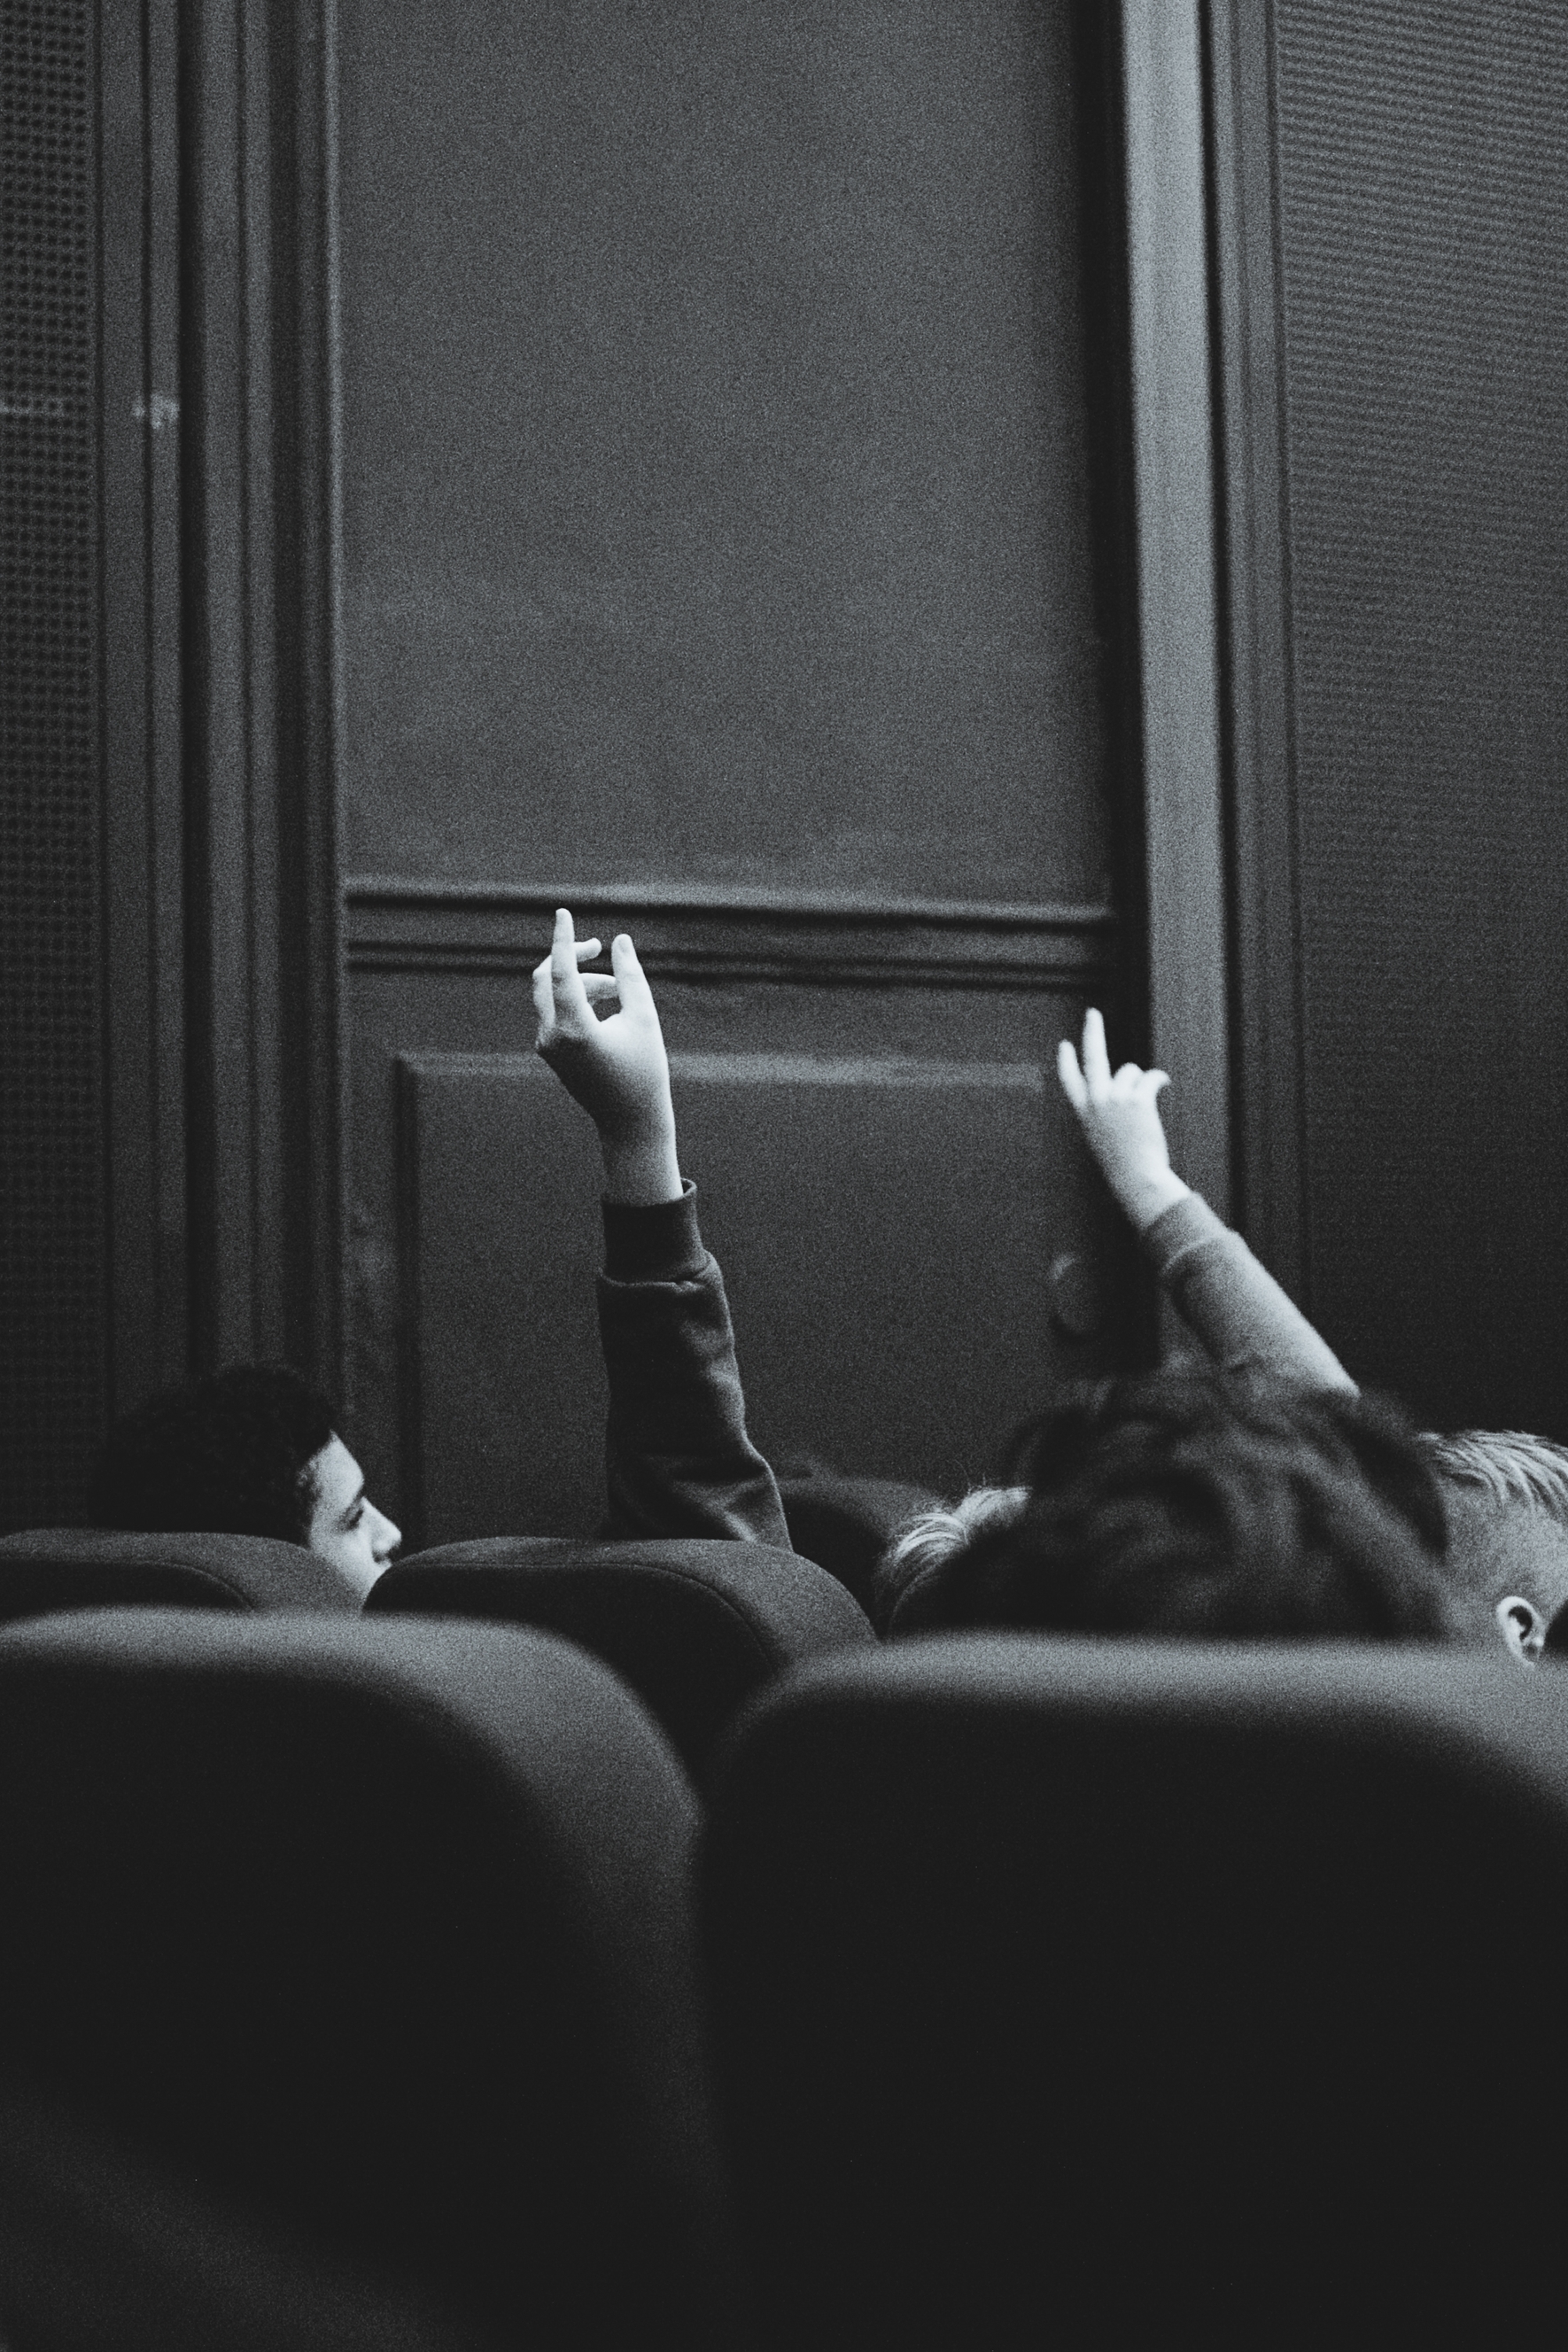 YOUKI, Cinema, children, raising hands